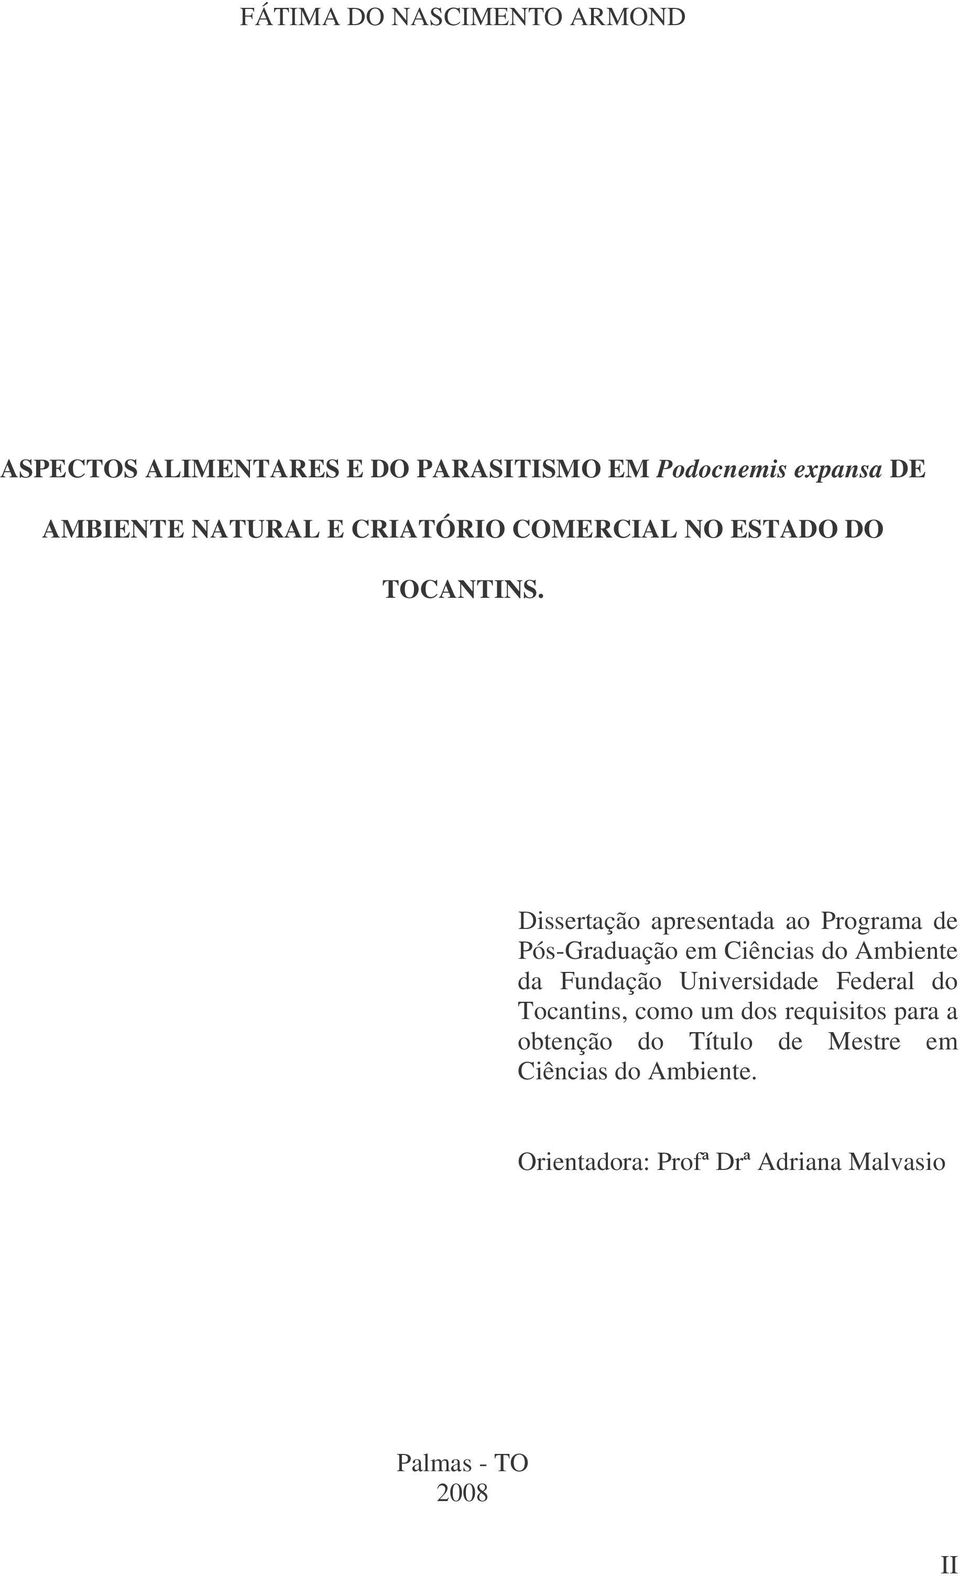 Dissertação apresentada ao Programa de Pós-Graduação em Ciências do Ambiente da Fundação Universidade